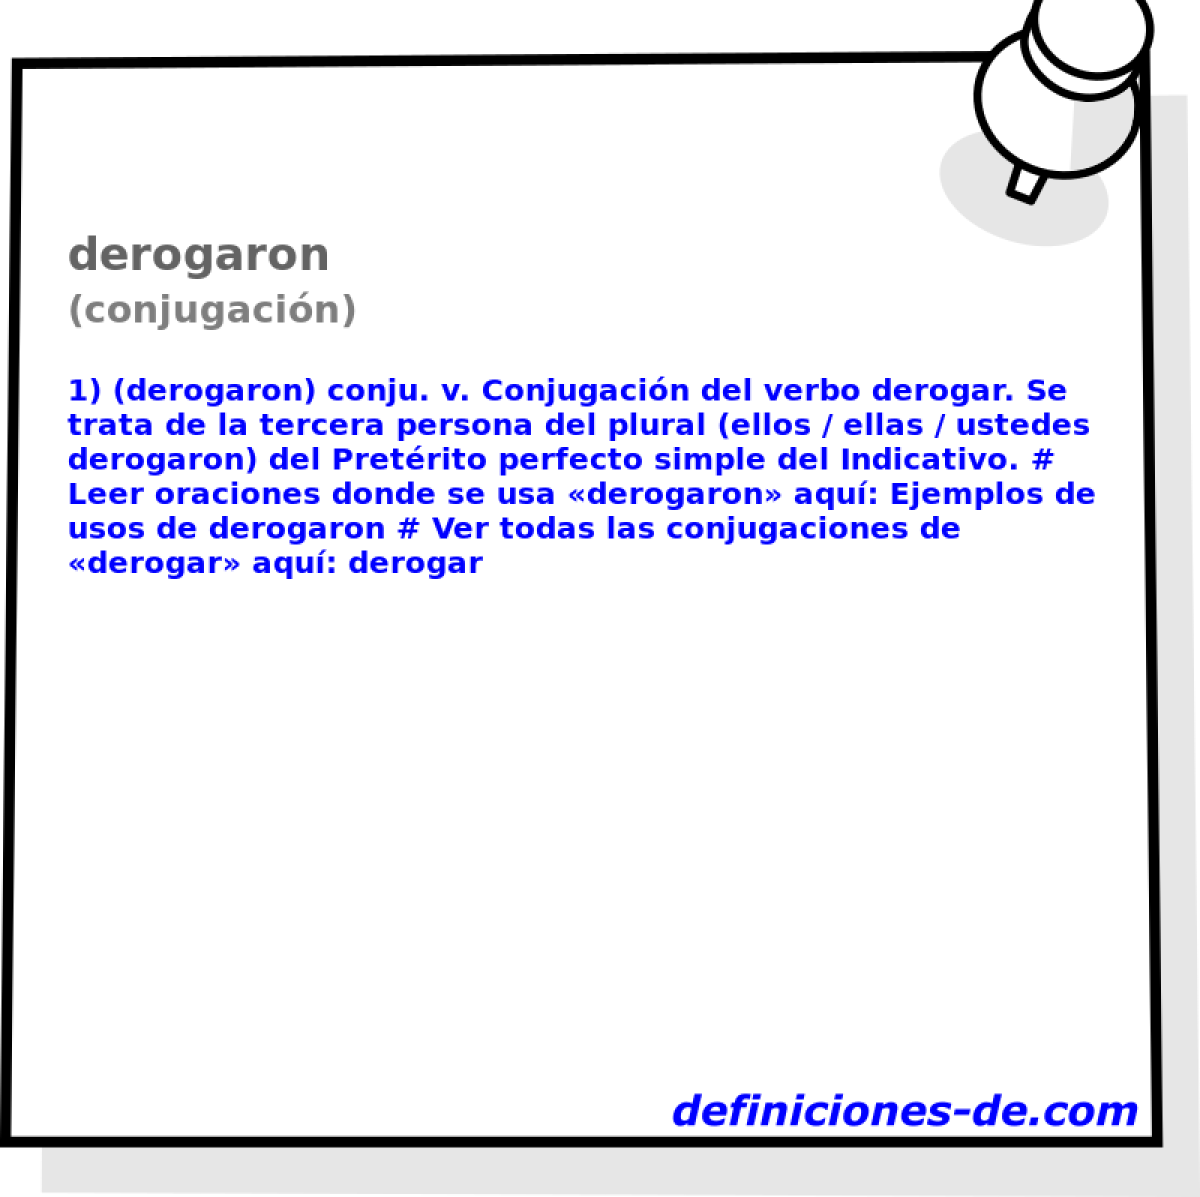 derogaron (conjugacin)